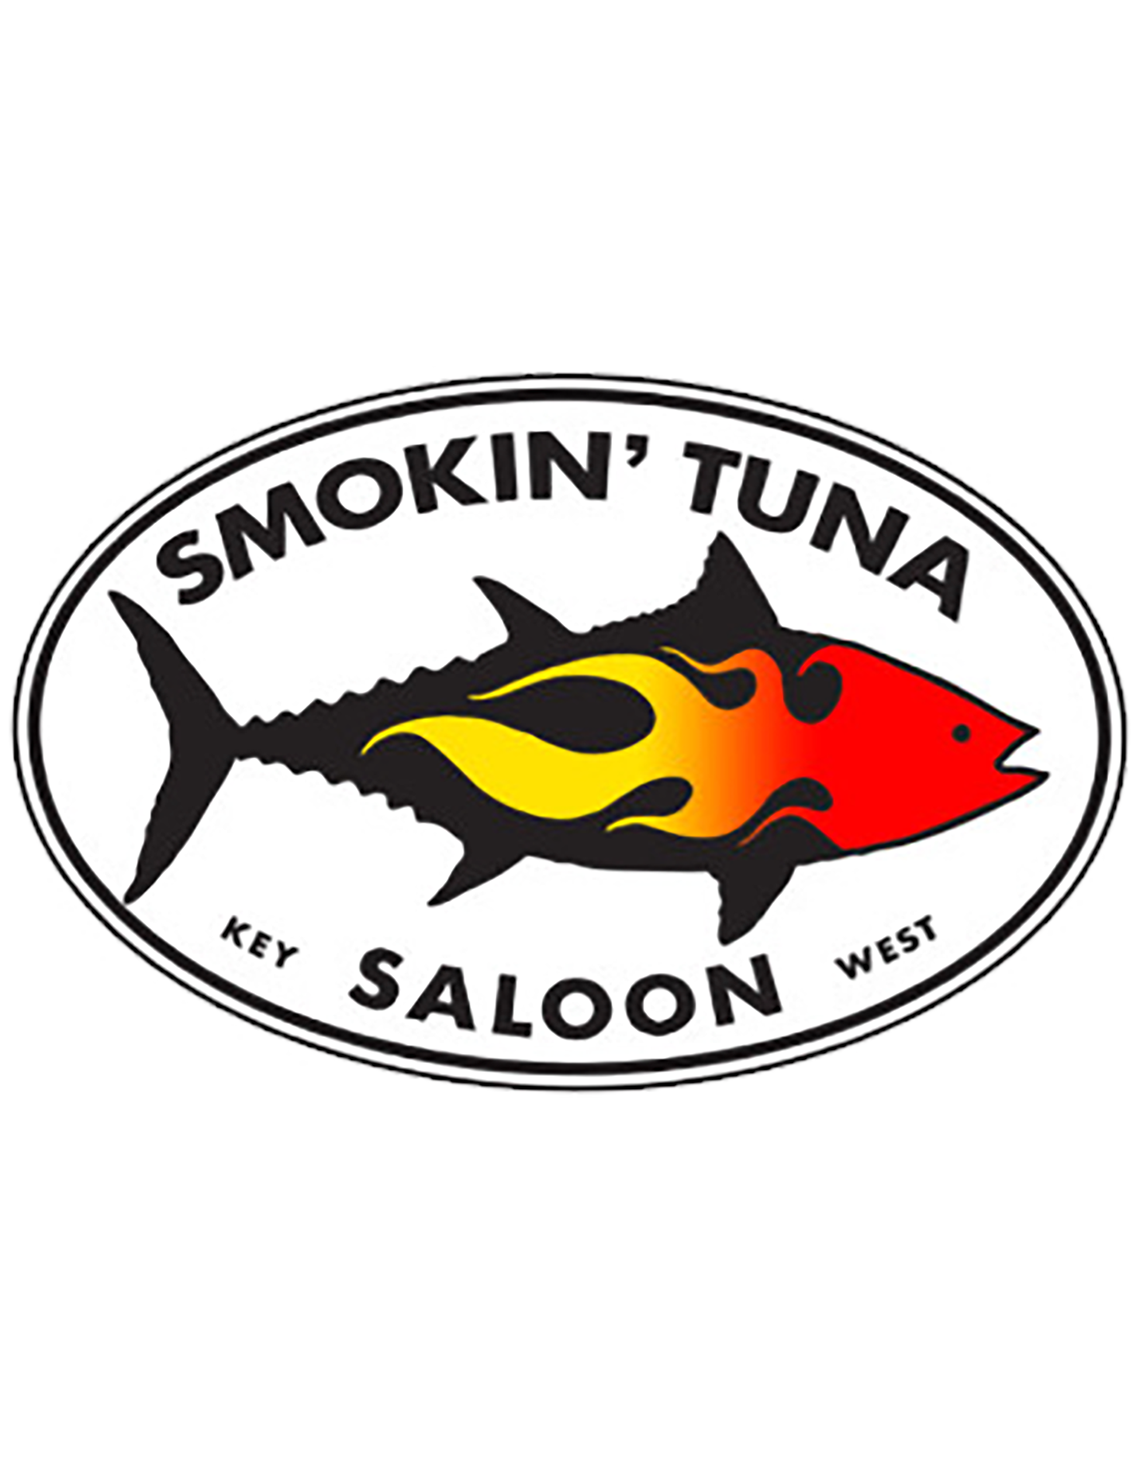 Smokin' Tuna Saloon logo